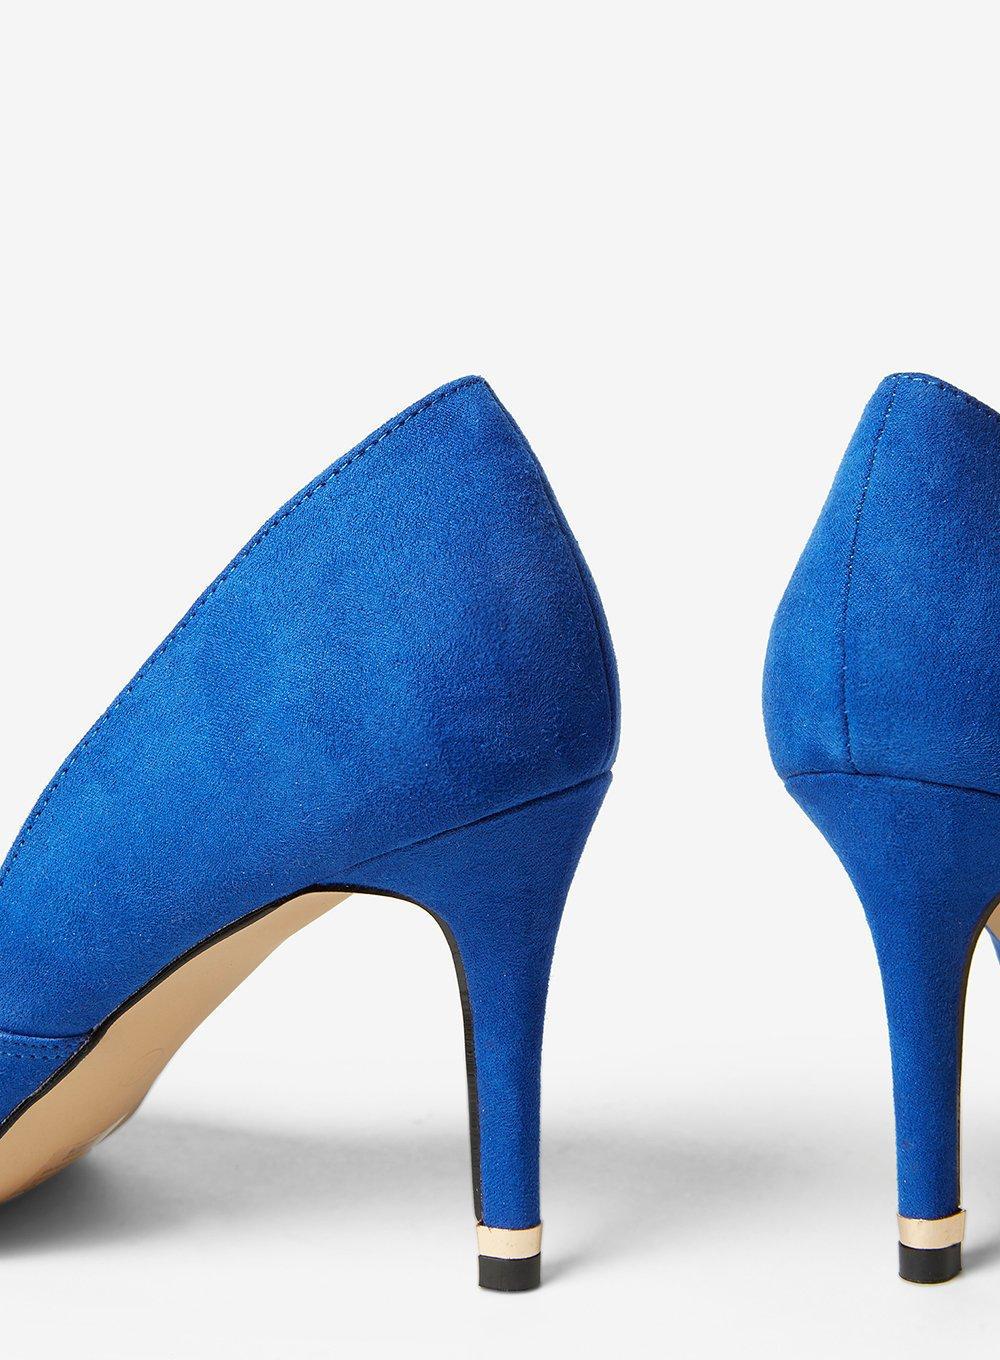 cobalt blue shoes wide fit